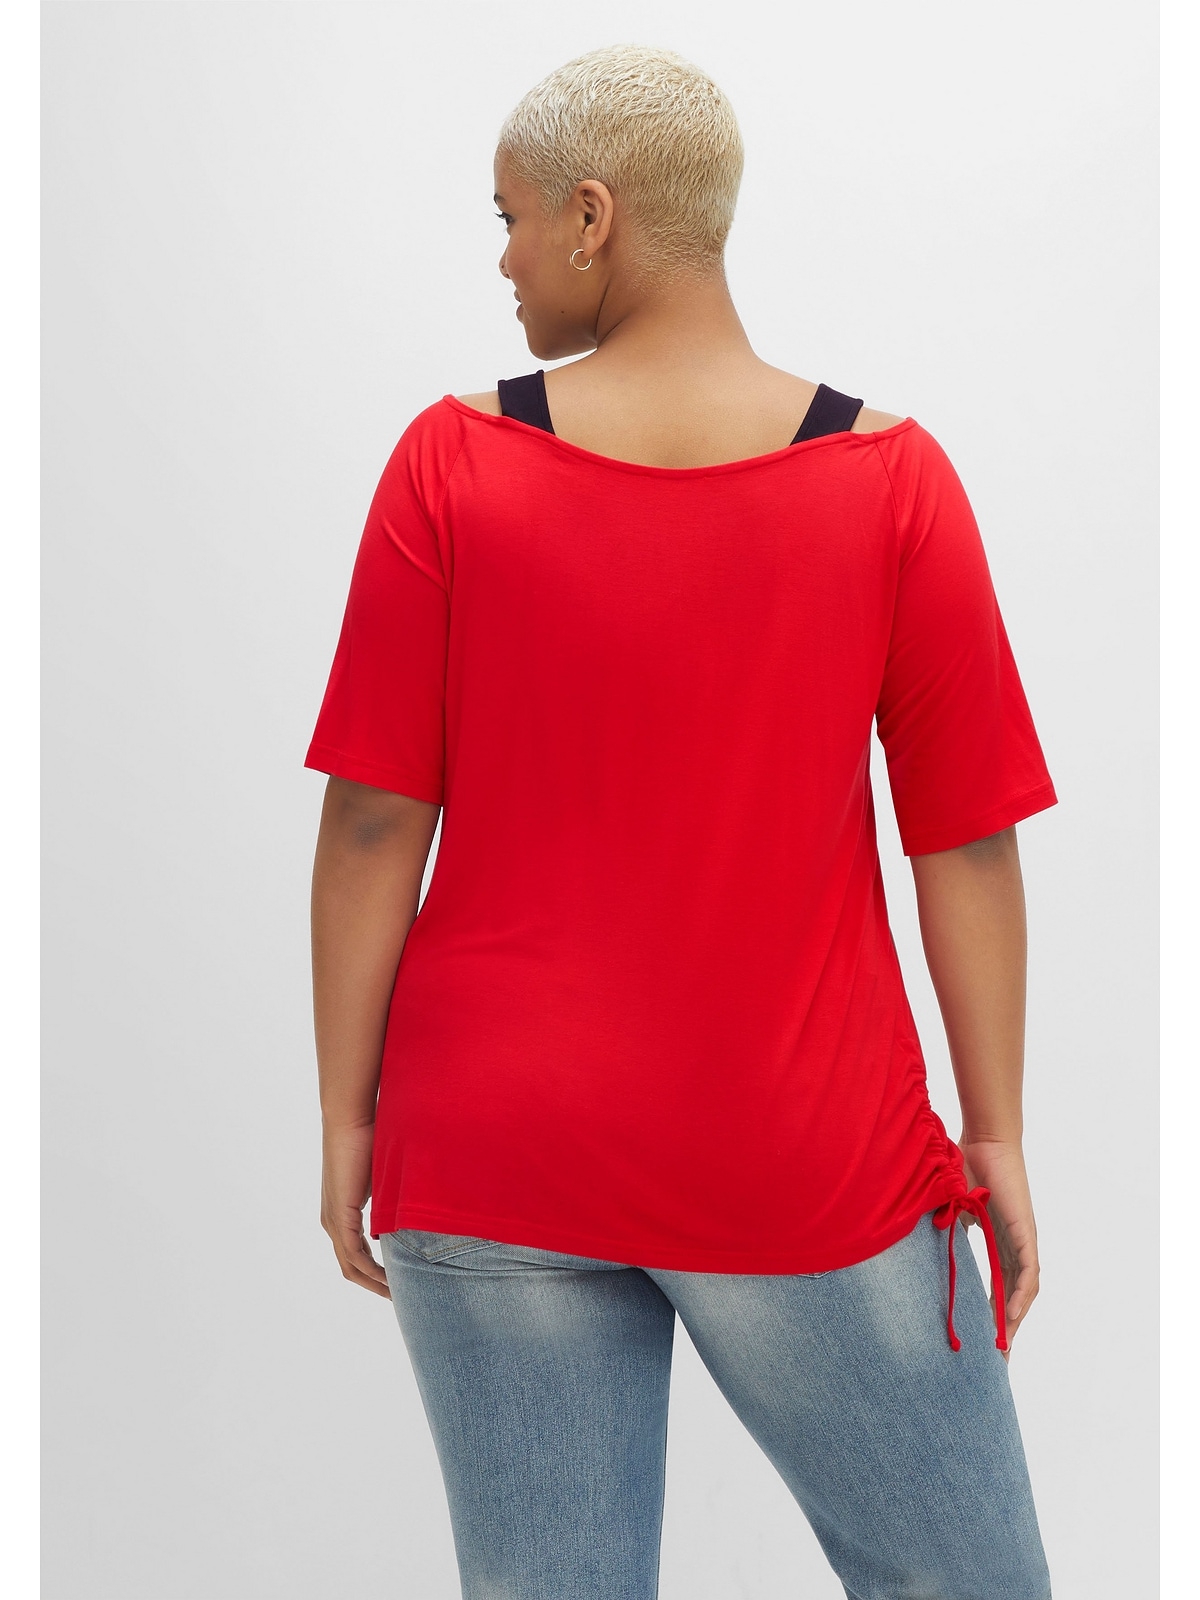 Frontdruck sheego T-Shirt und mit Trägern Browns Joe kaufen by Größen«, »Große